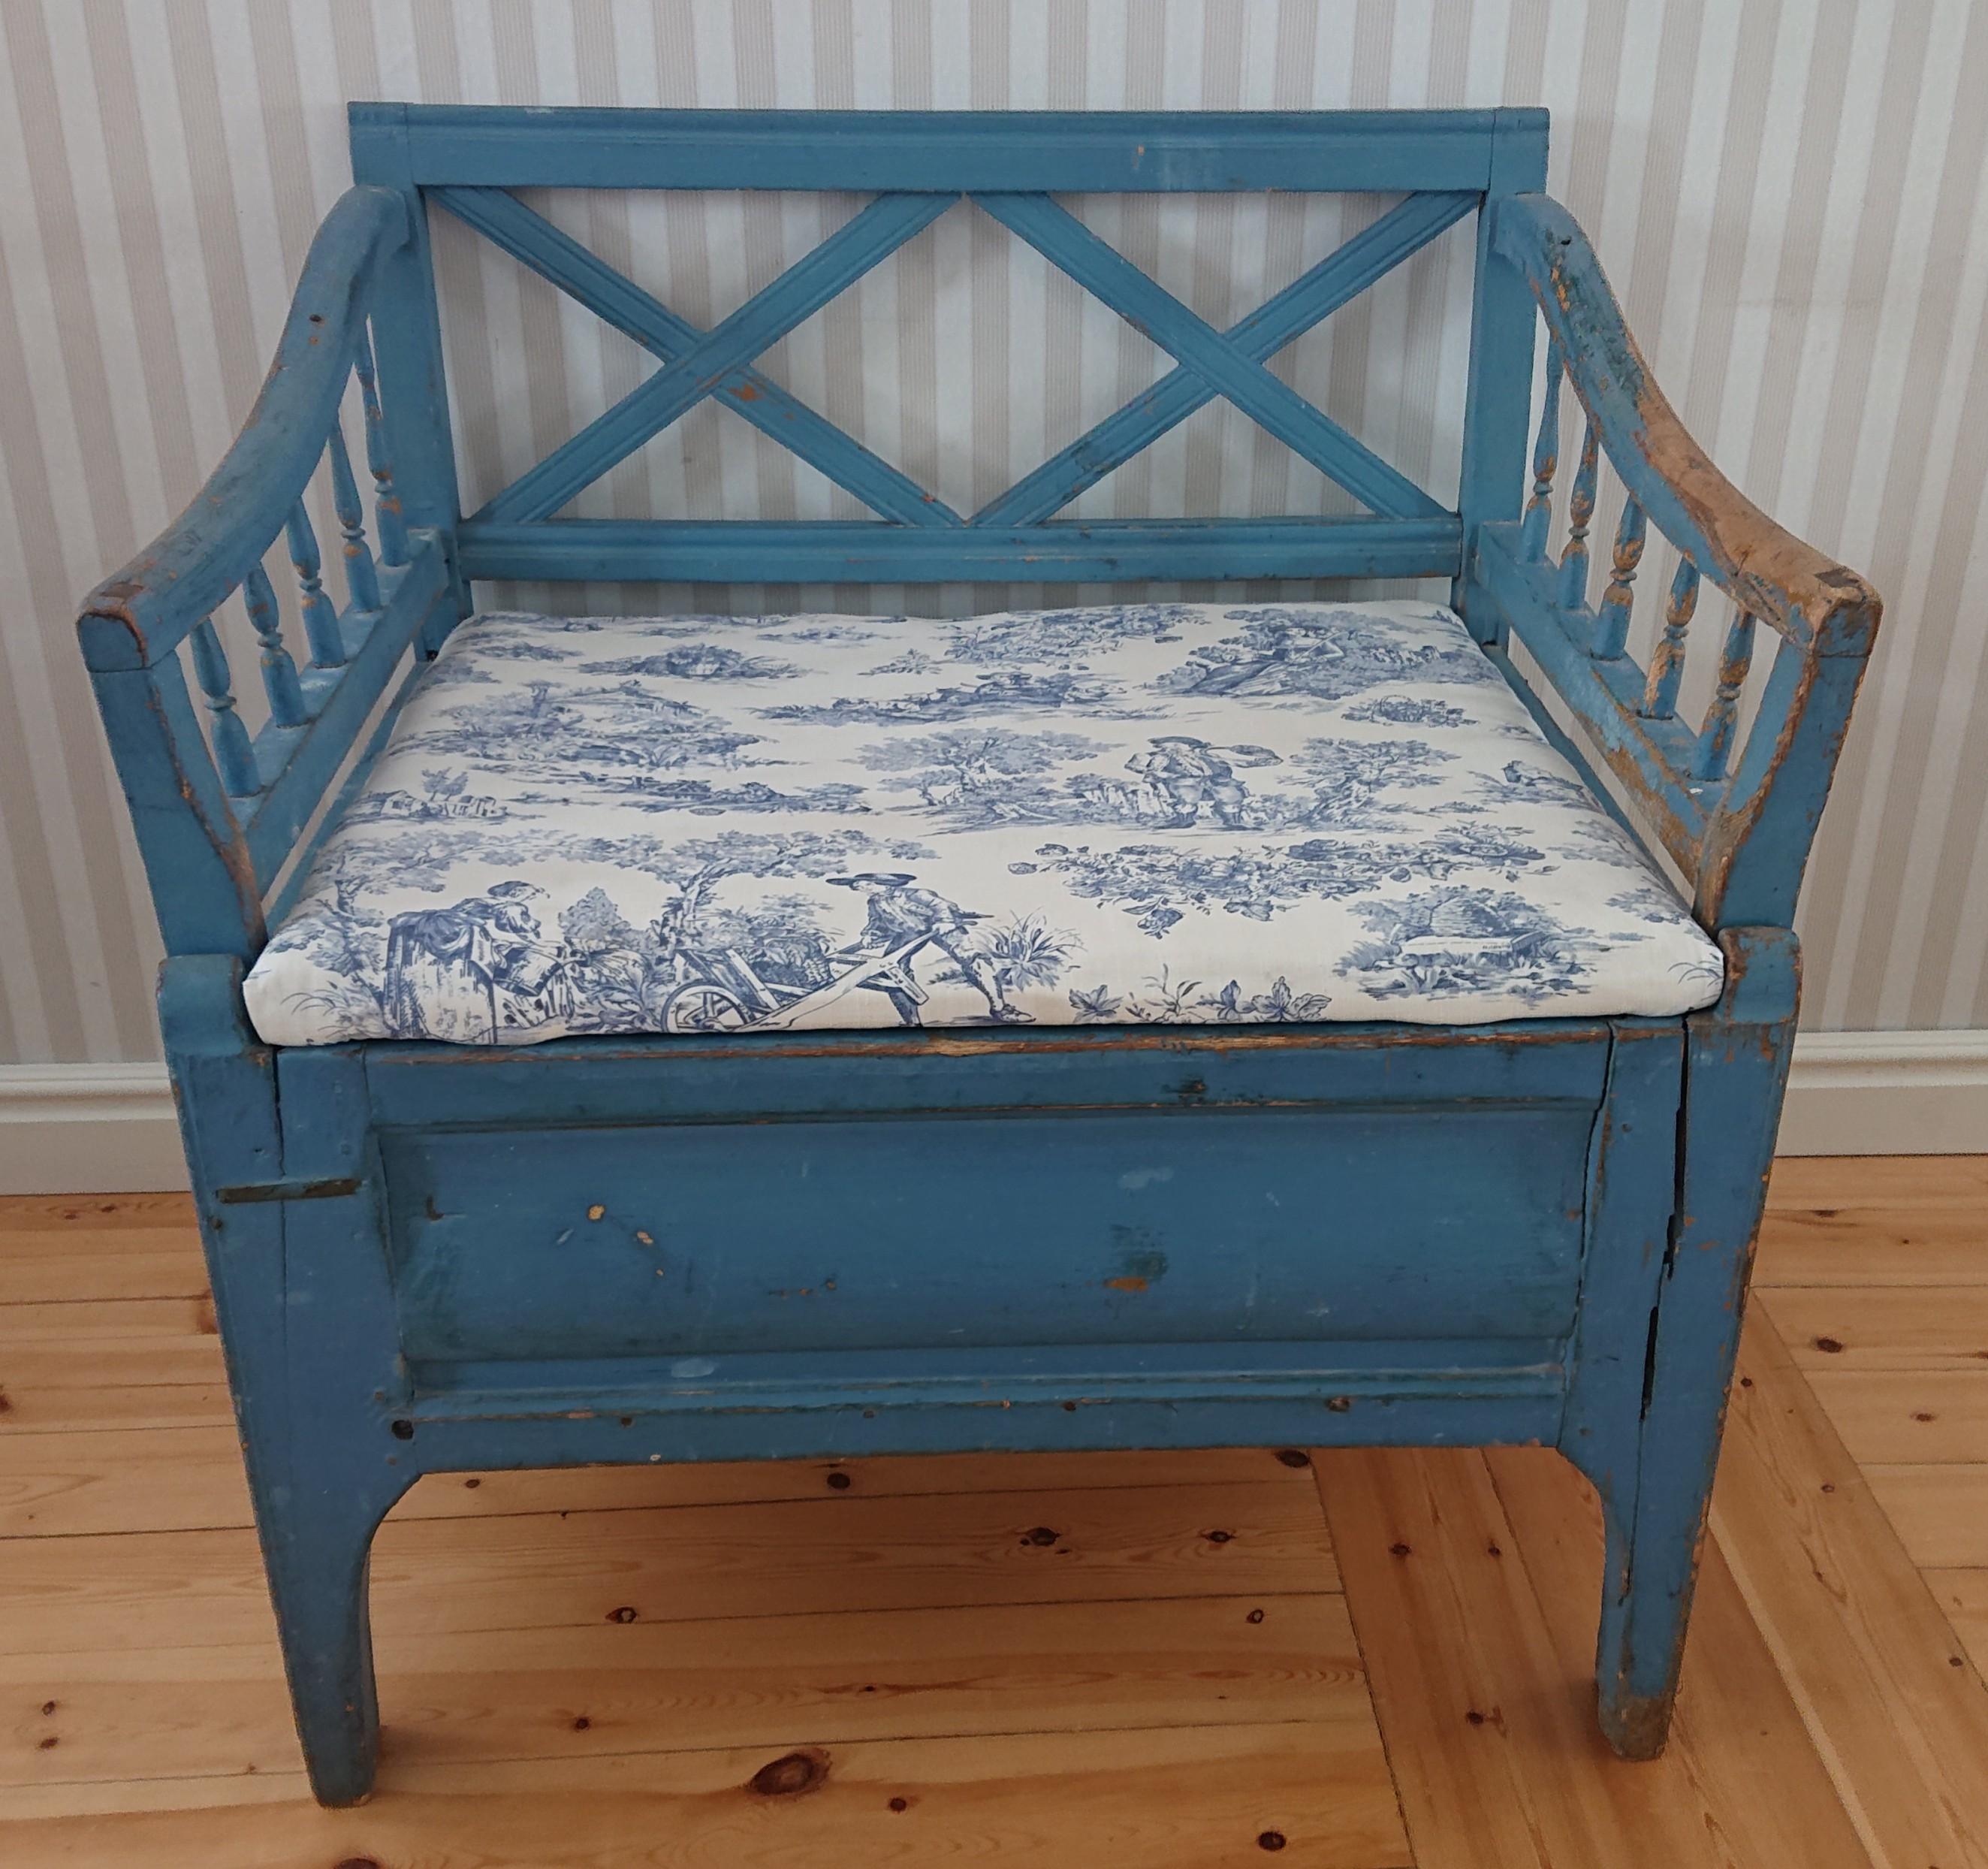 Ein schönes kleines Gustavianisches Sofa von Ersns Lule, Nordschweden .
Das Sofa hat eine unberührte blaue Originalfarbe.
Schönes Modell, sehr einfach zu platzieren.
Unter dem Deckel befindet sich eine große Aufbewahrungsfläche.
Der Sitz ist mit